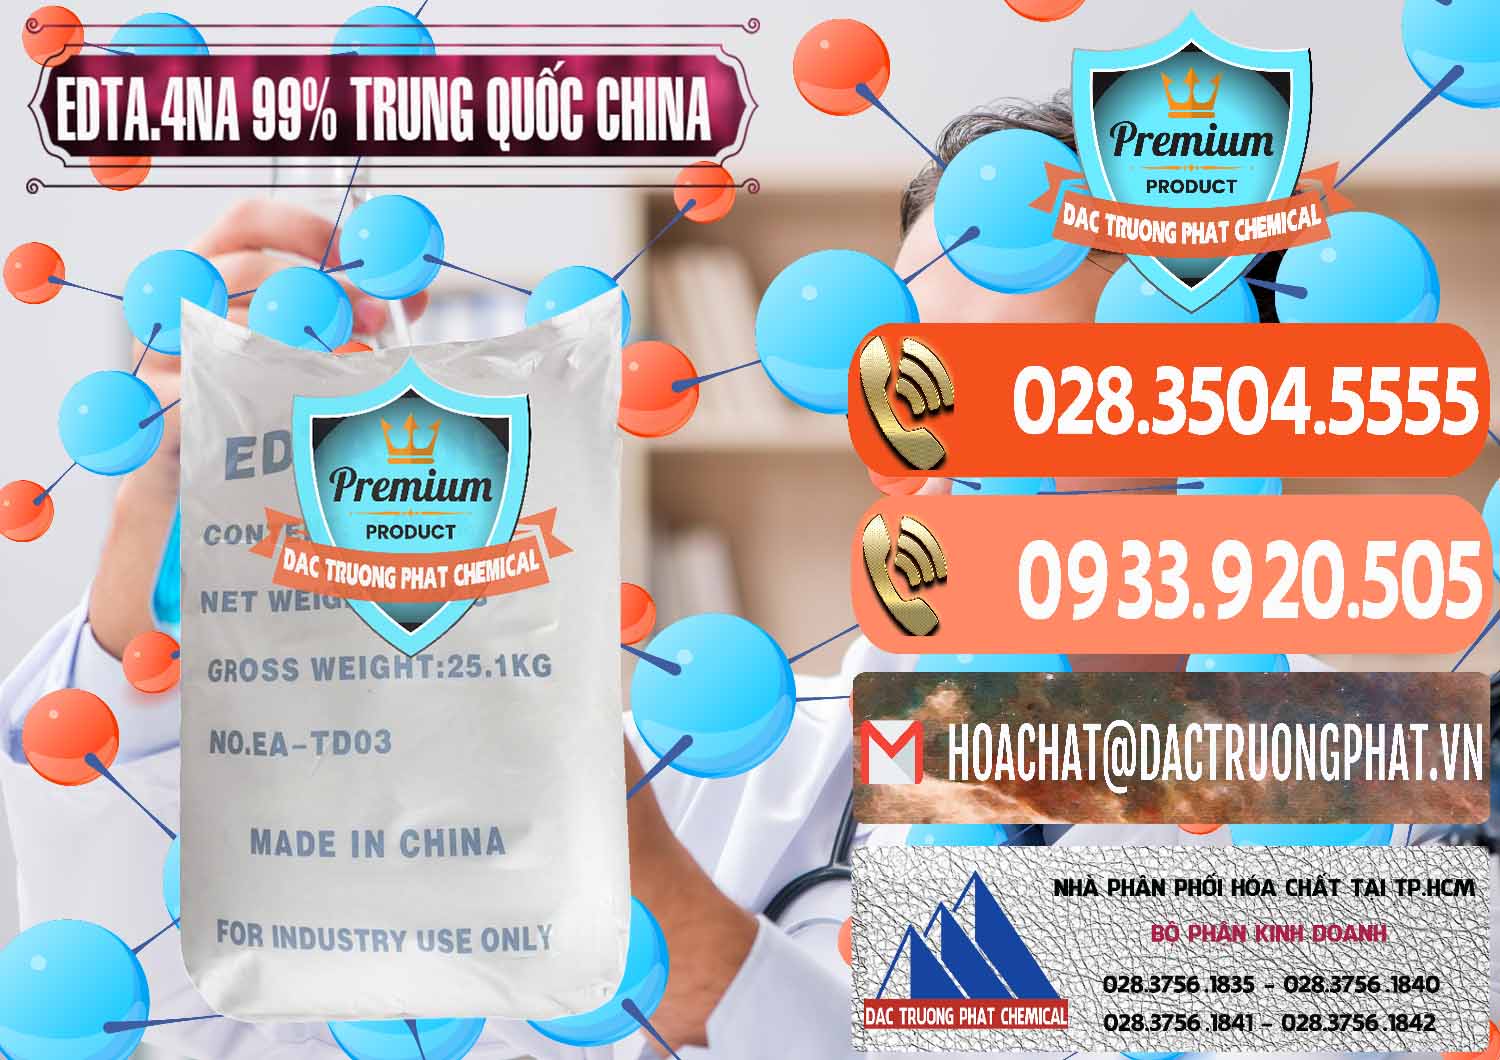 Nơi kinh doanh và bán EDTA.4NA - EDTA Muối 99% Trung Quốc China - 0292 - Cty chuyên nhập khẩu và phân phối hóa chất tại TP.HCM - hoachatmientay.com